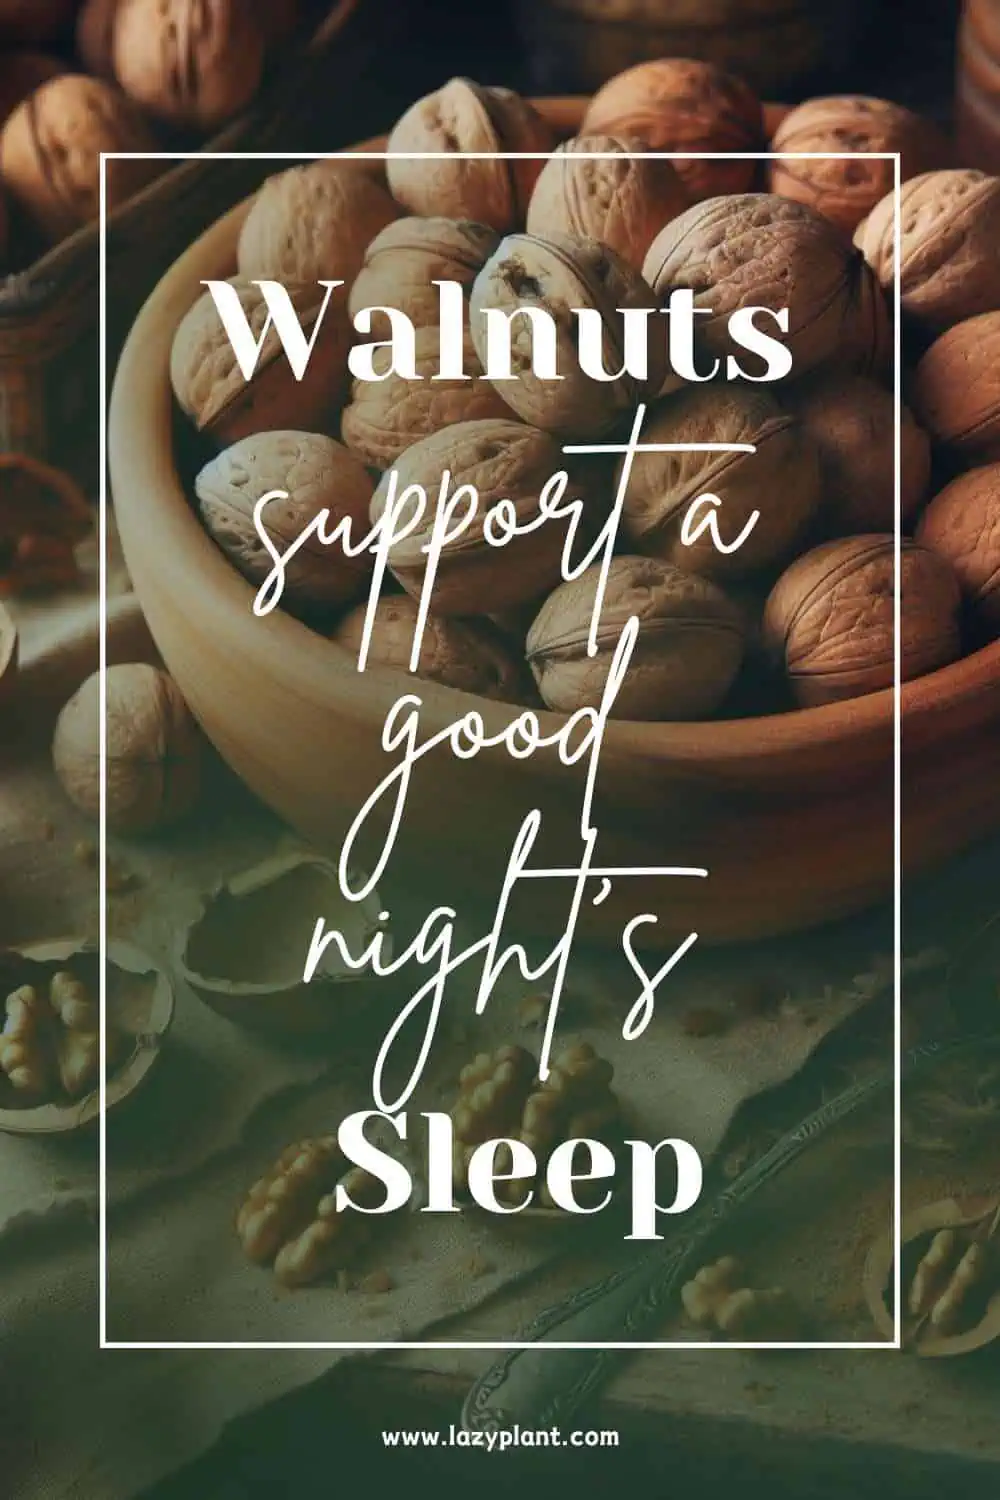 Walnuts for Sleep